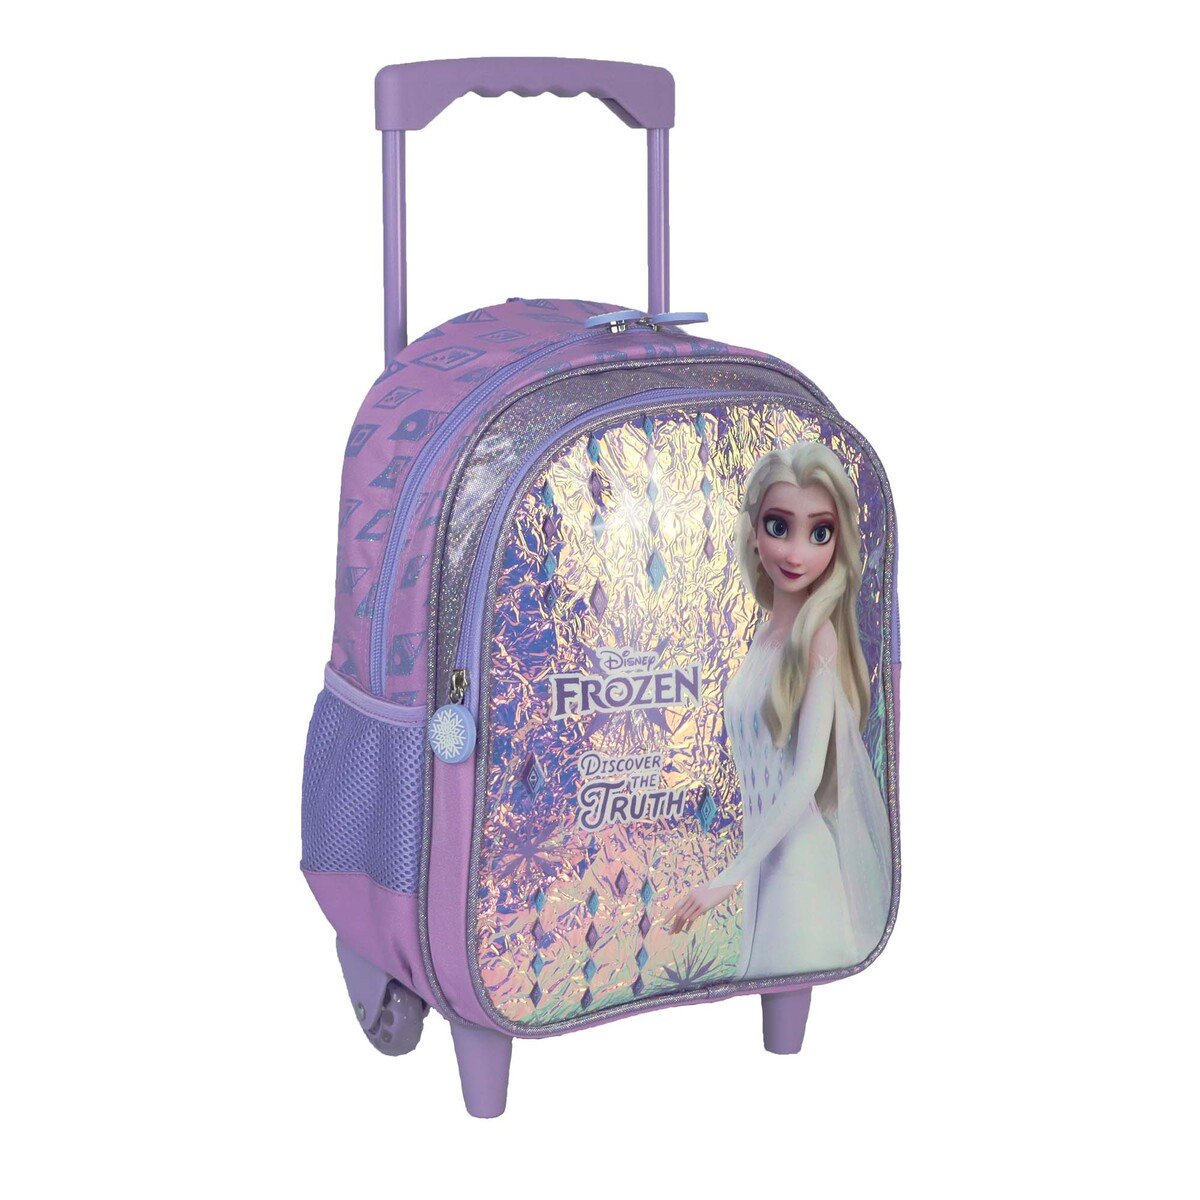 Frozen School Trolley Bag 6899200226 13inch